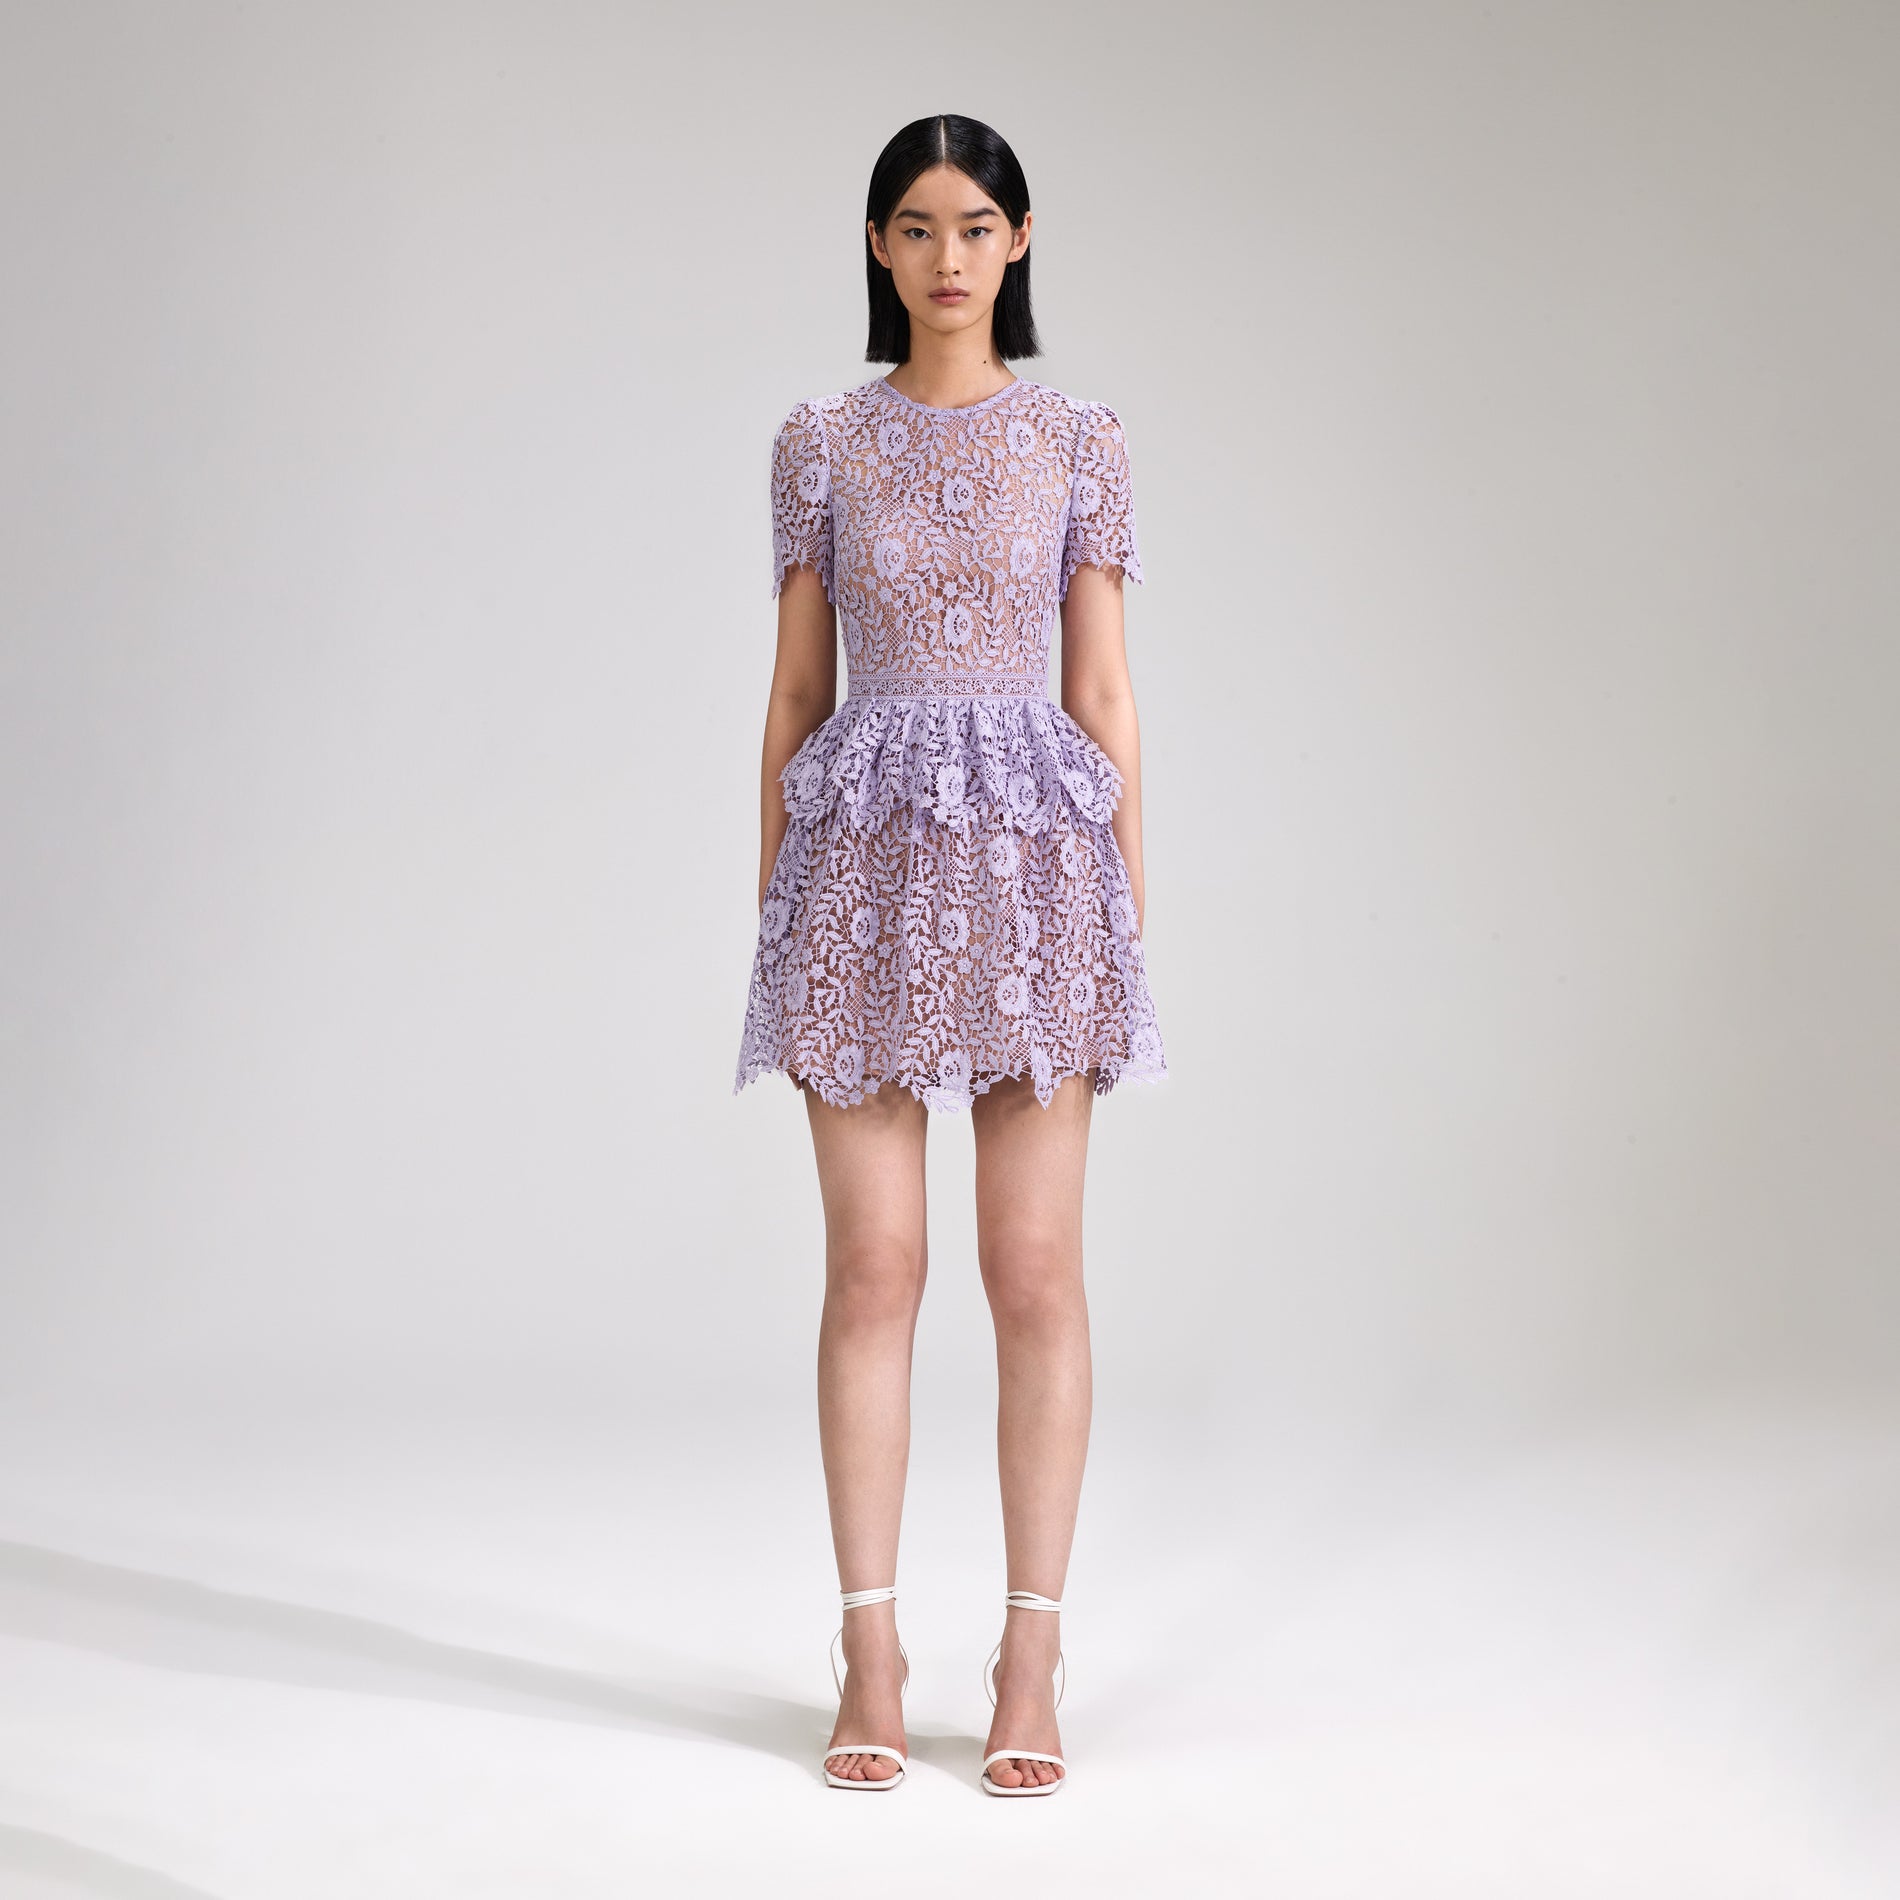 A woman wearing the Lilac Rose Lace Peplum Mini Dress